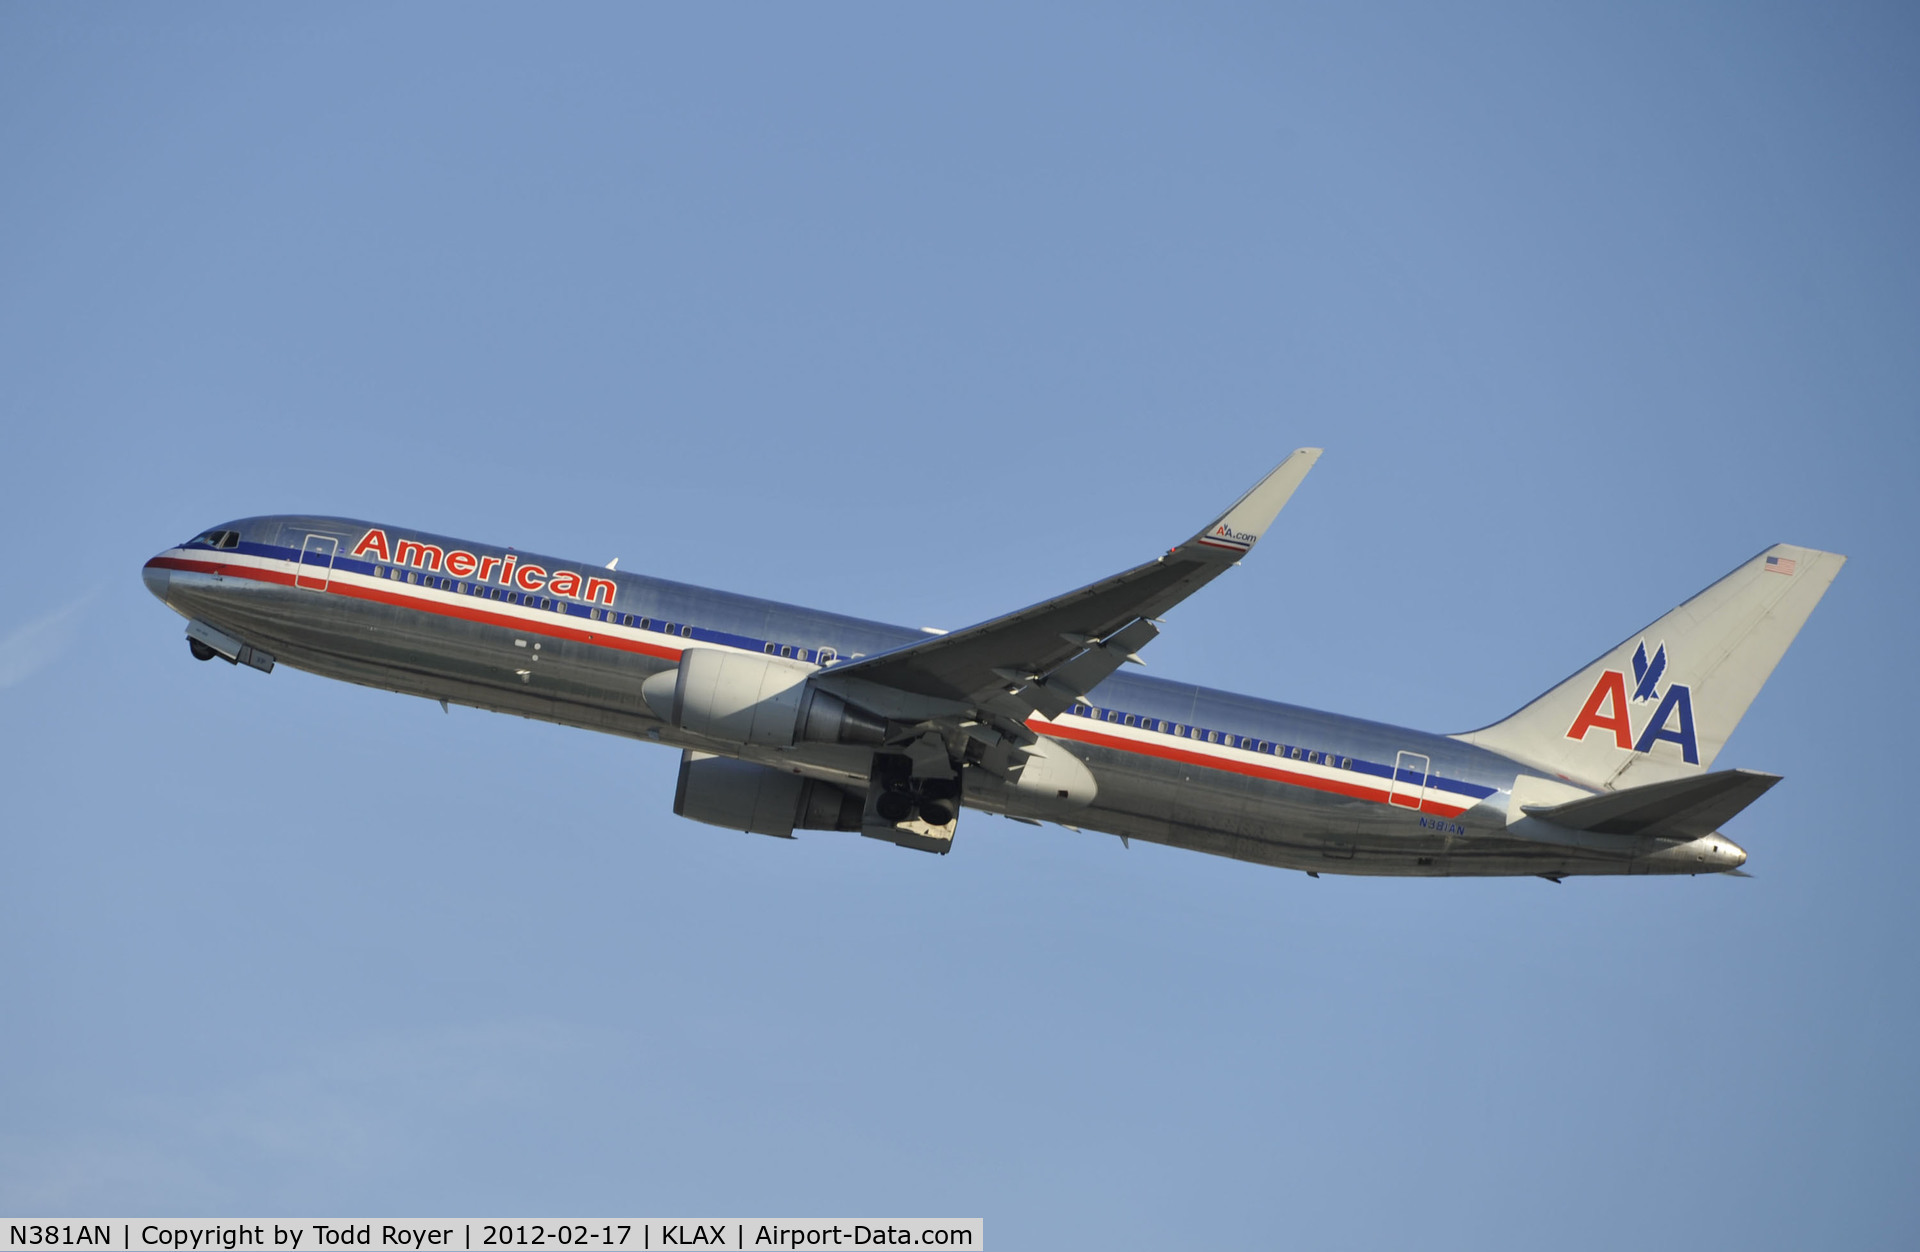 N381AN, 1993 Boeing 767-323 C/N 25450, Departing LAX on 25R